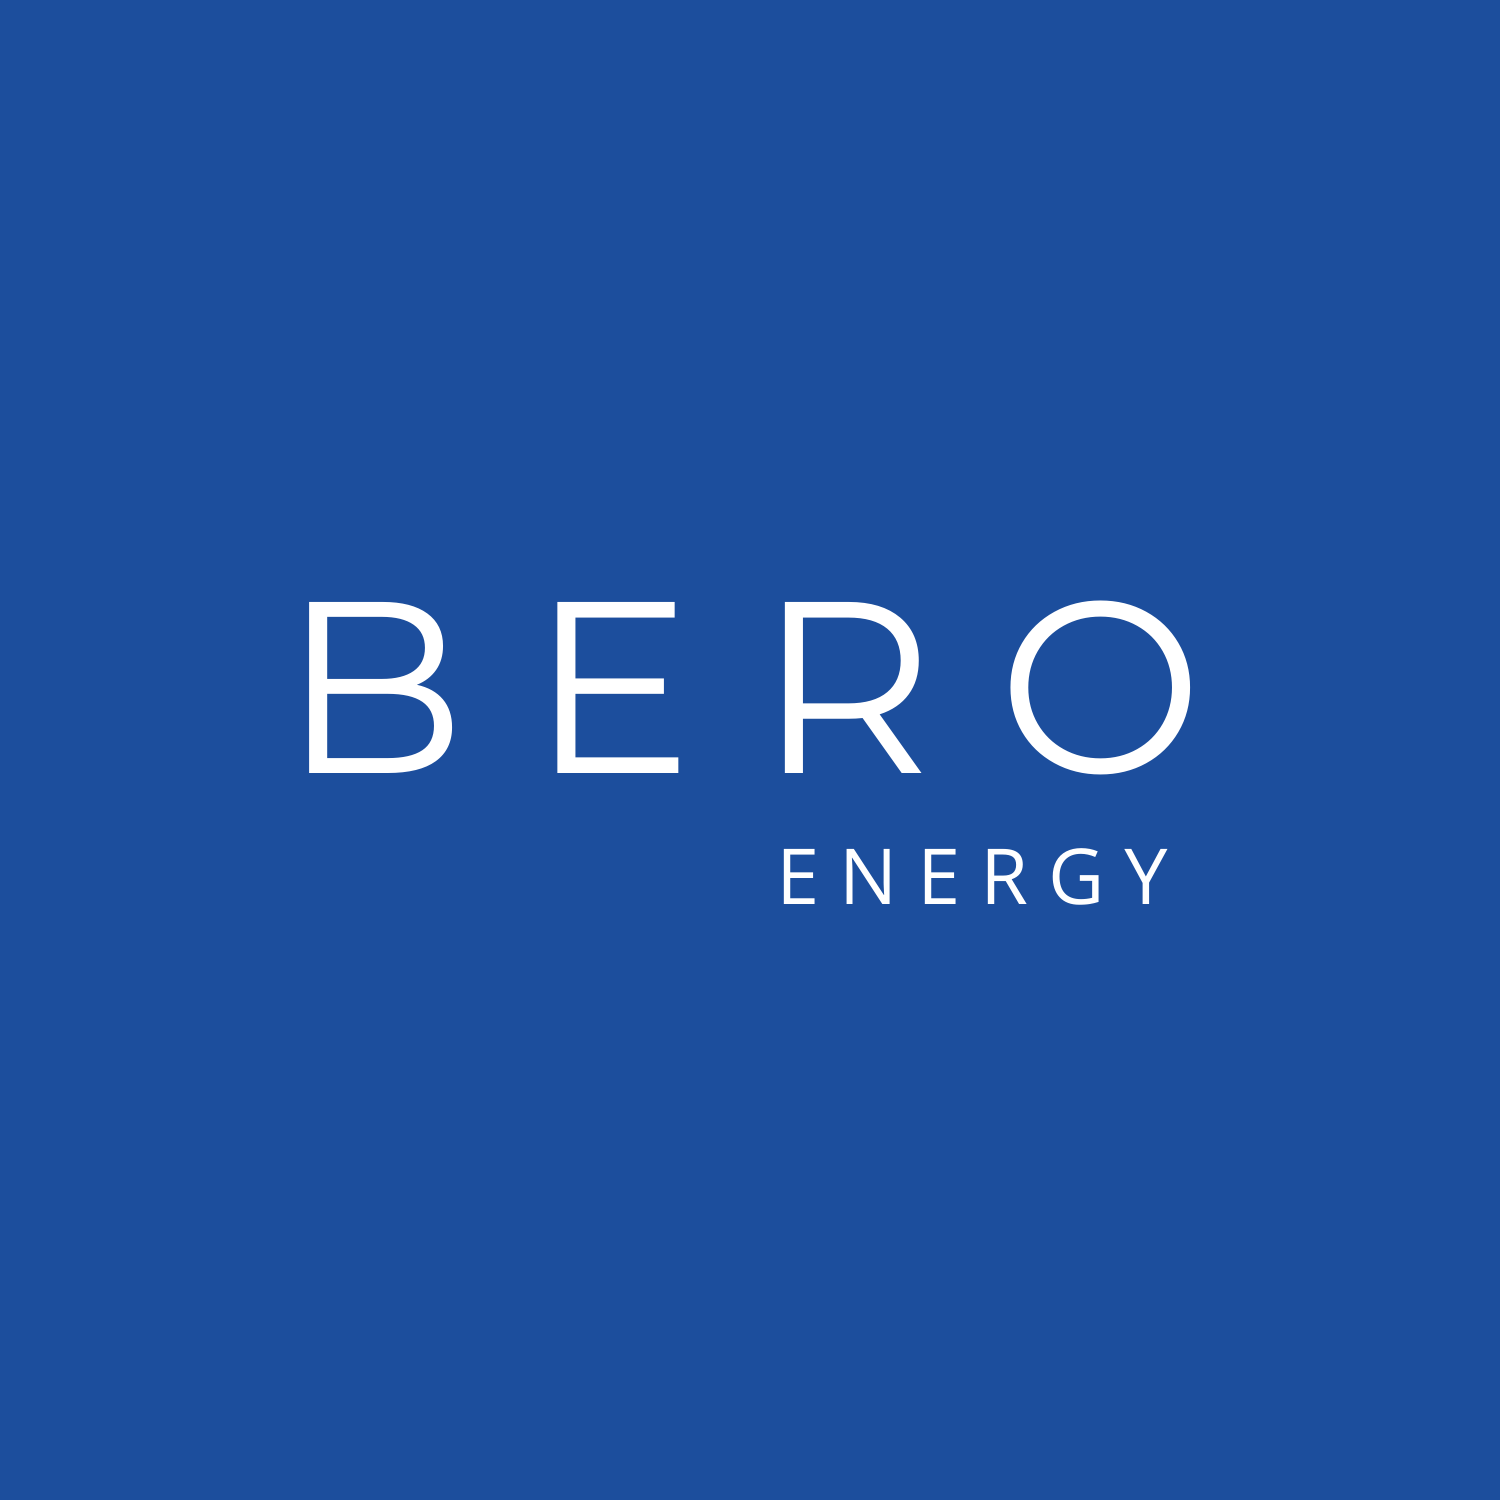 Bero Energy Group